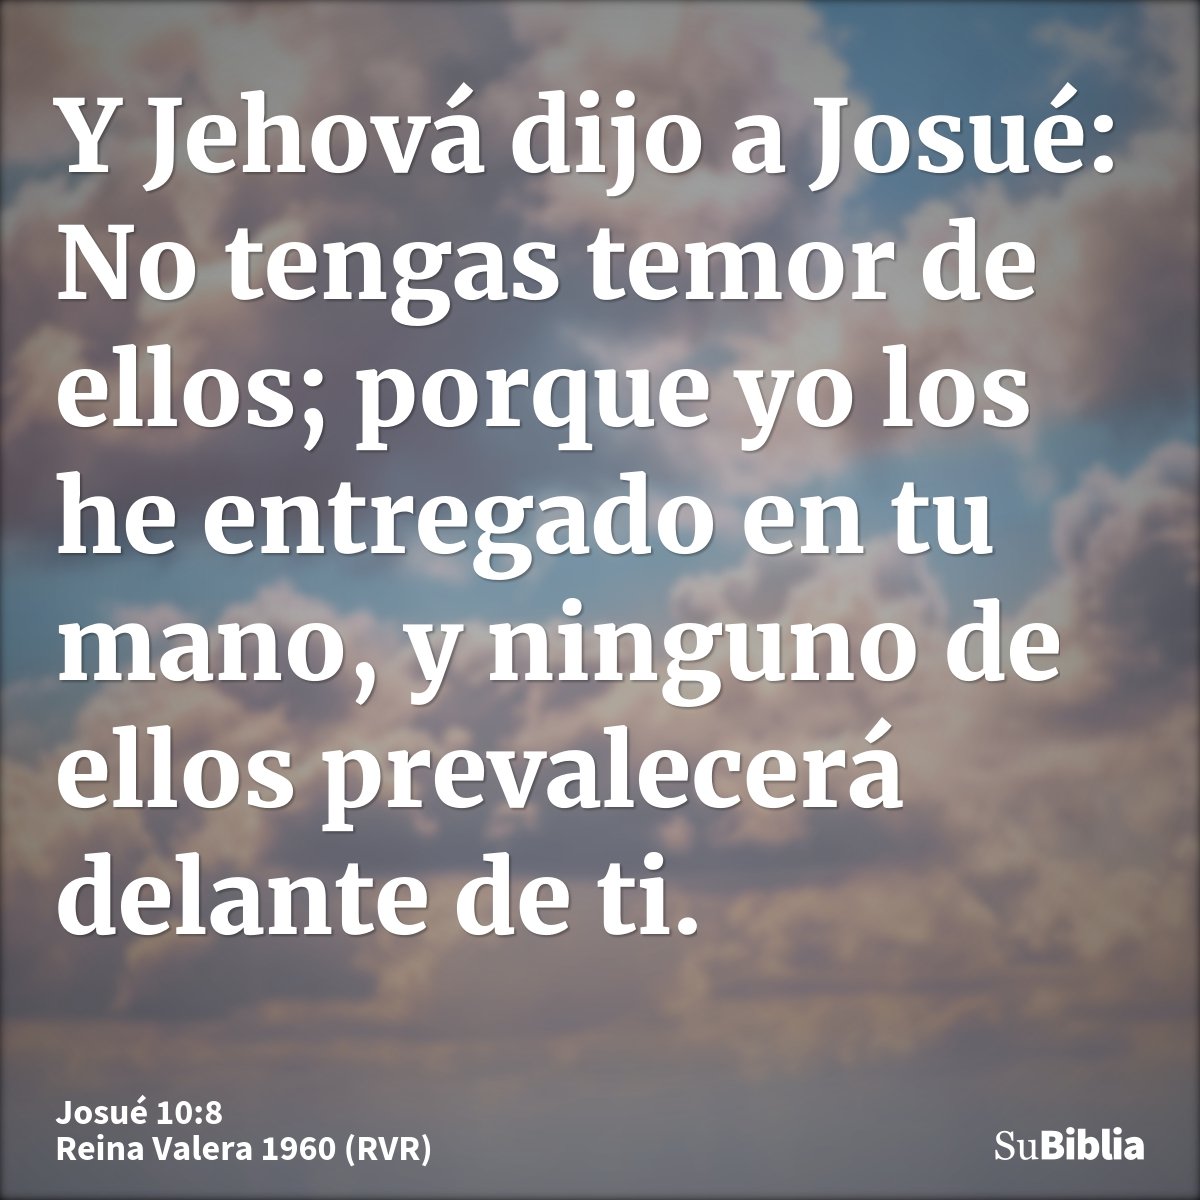 Y Jehová dijo a Josué: No tengas temor de ellos; porque yo los he entregado en tu mano, y ninguno de ellos prevalecerá delante de ti.